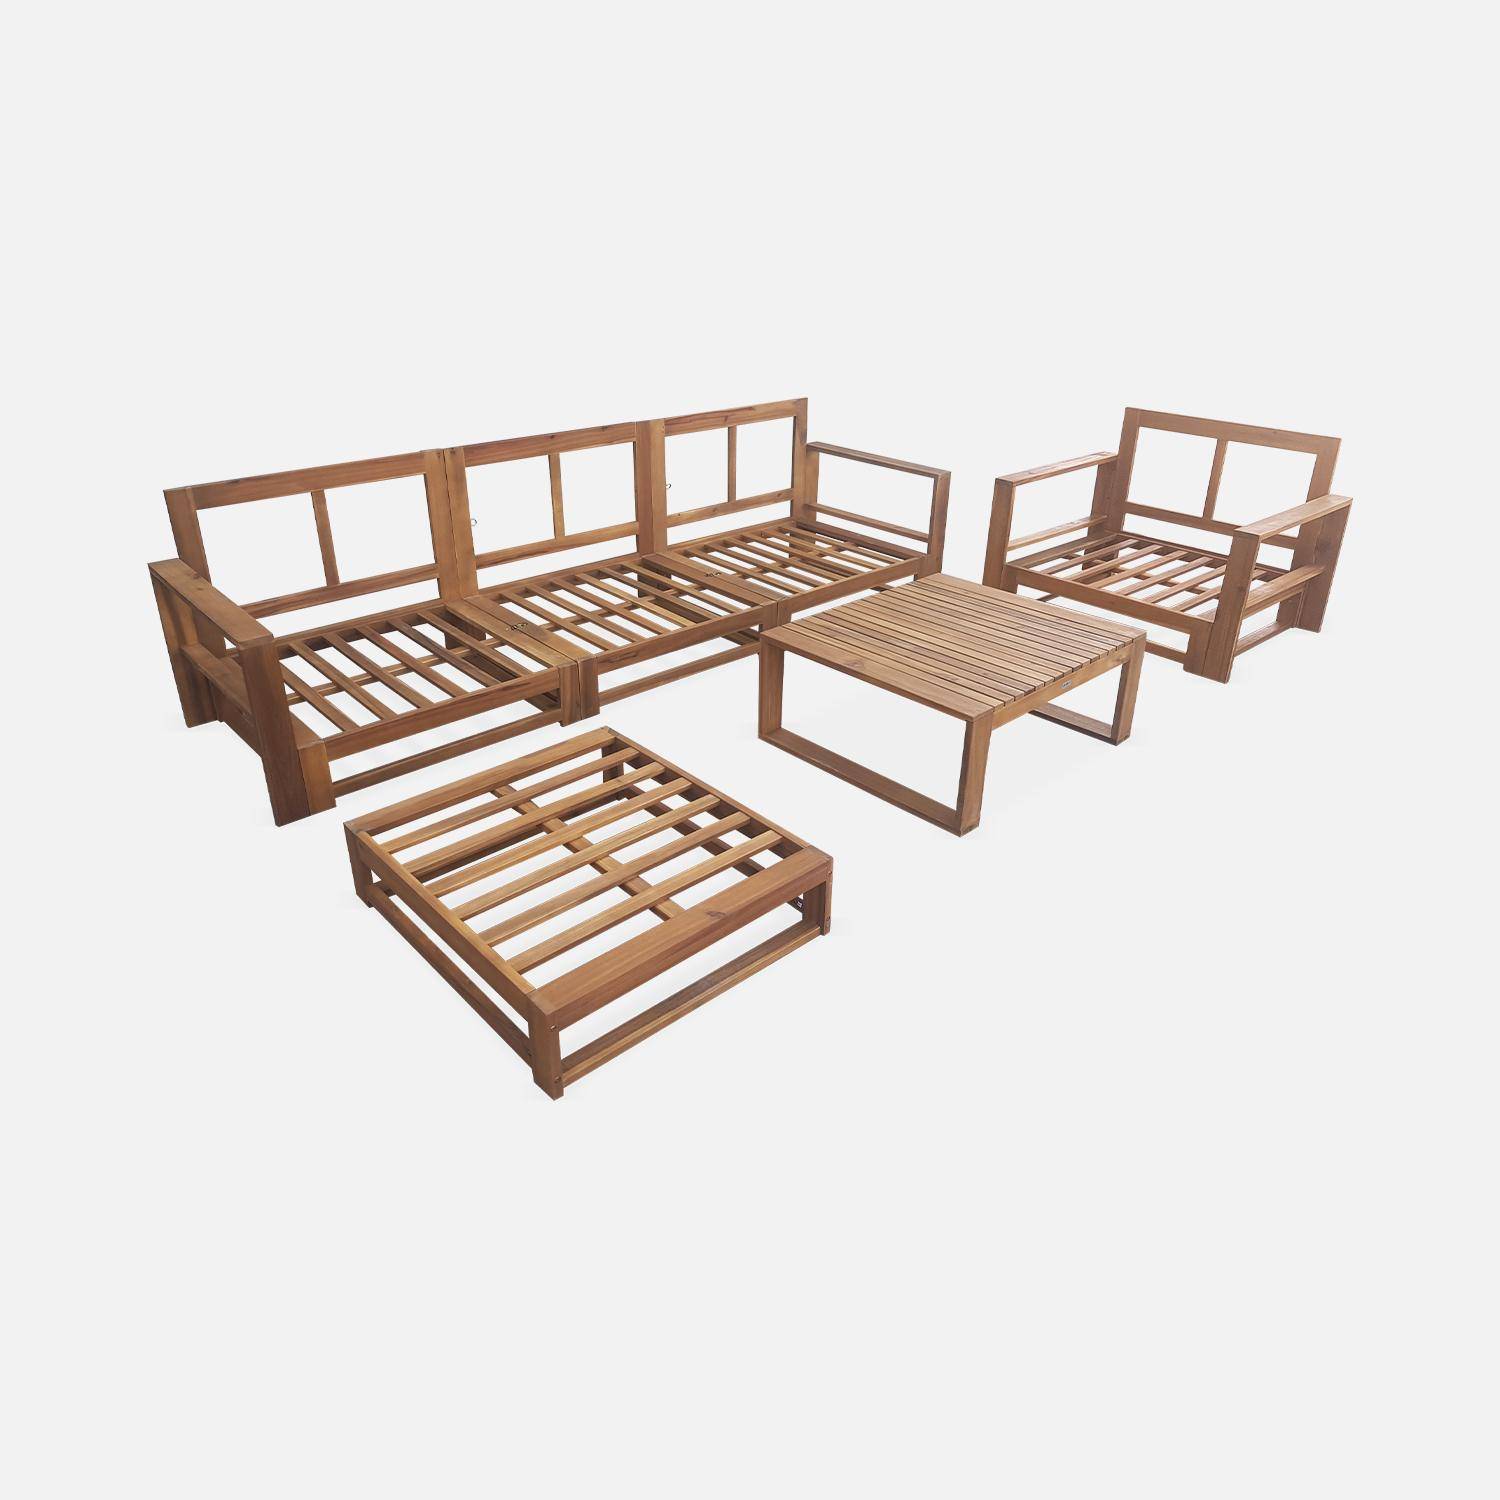 Salon de jardin en bois 5 places - Mendoza - Coussins beiges, canapé, fauteuils et table basse en acacia, 6 éléments modulables, design Photo6